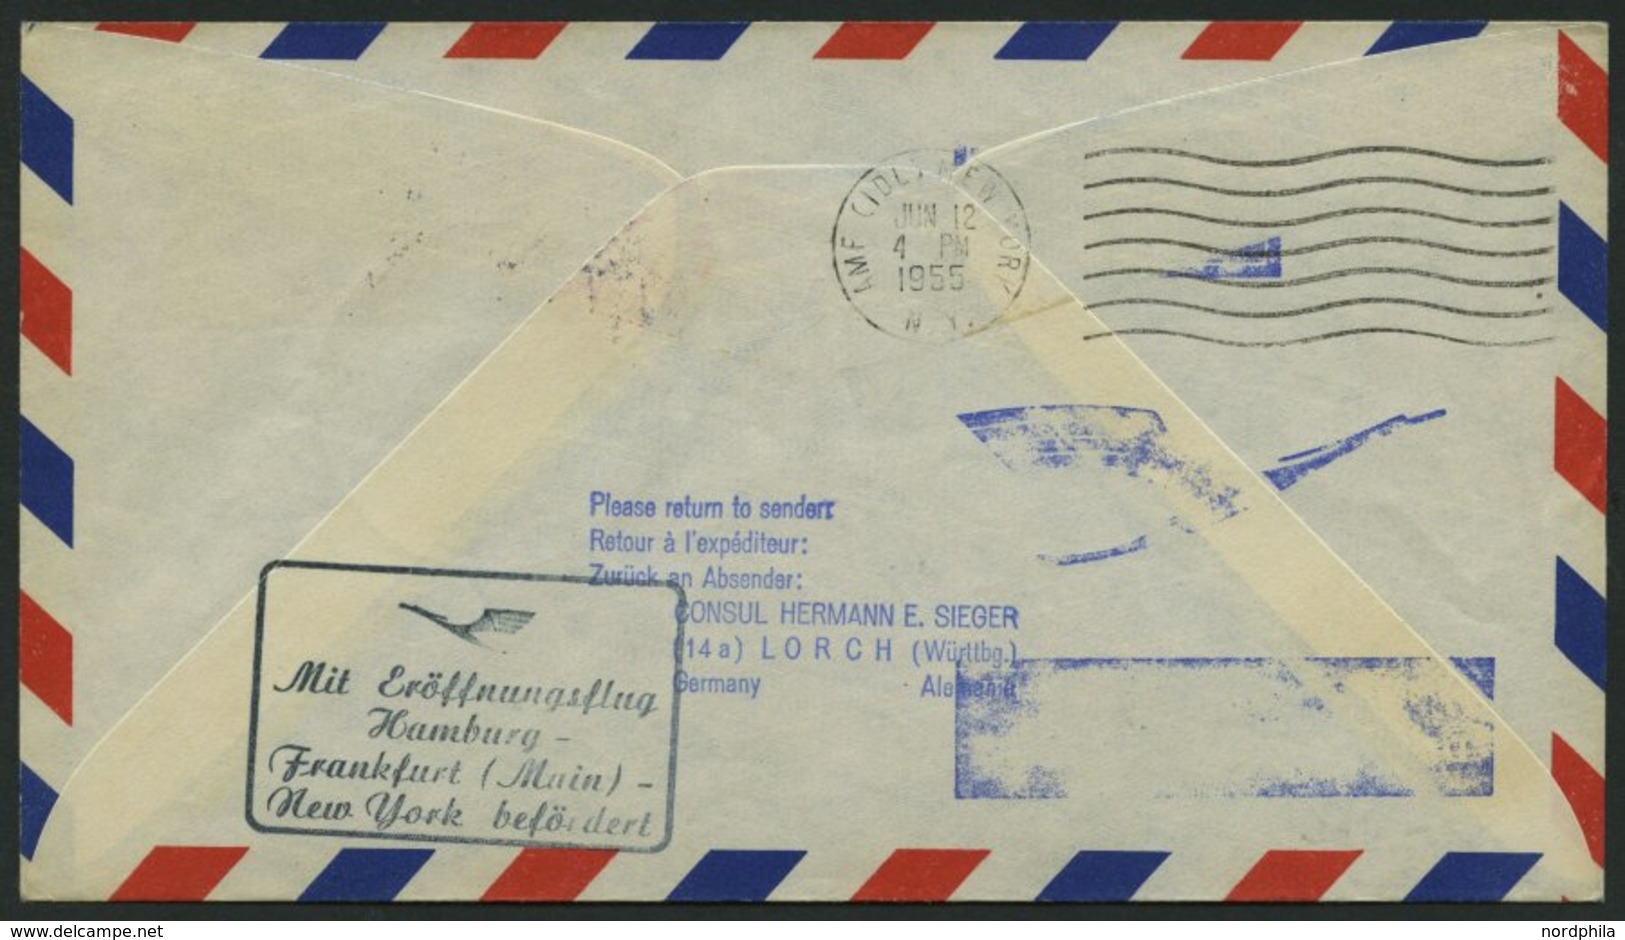 DEUTSCHE LUFTHANSA 40 BRIEF, 11.6.1955, Hamburg-New York, Prachtbrief - Used Stamps